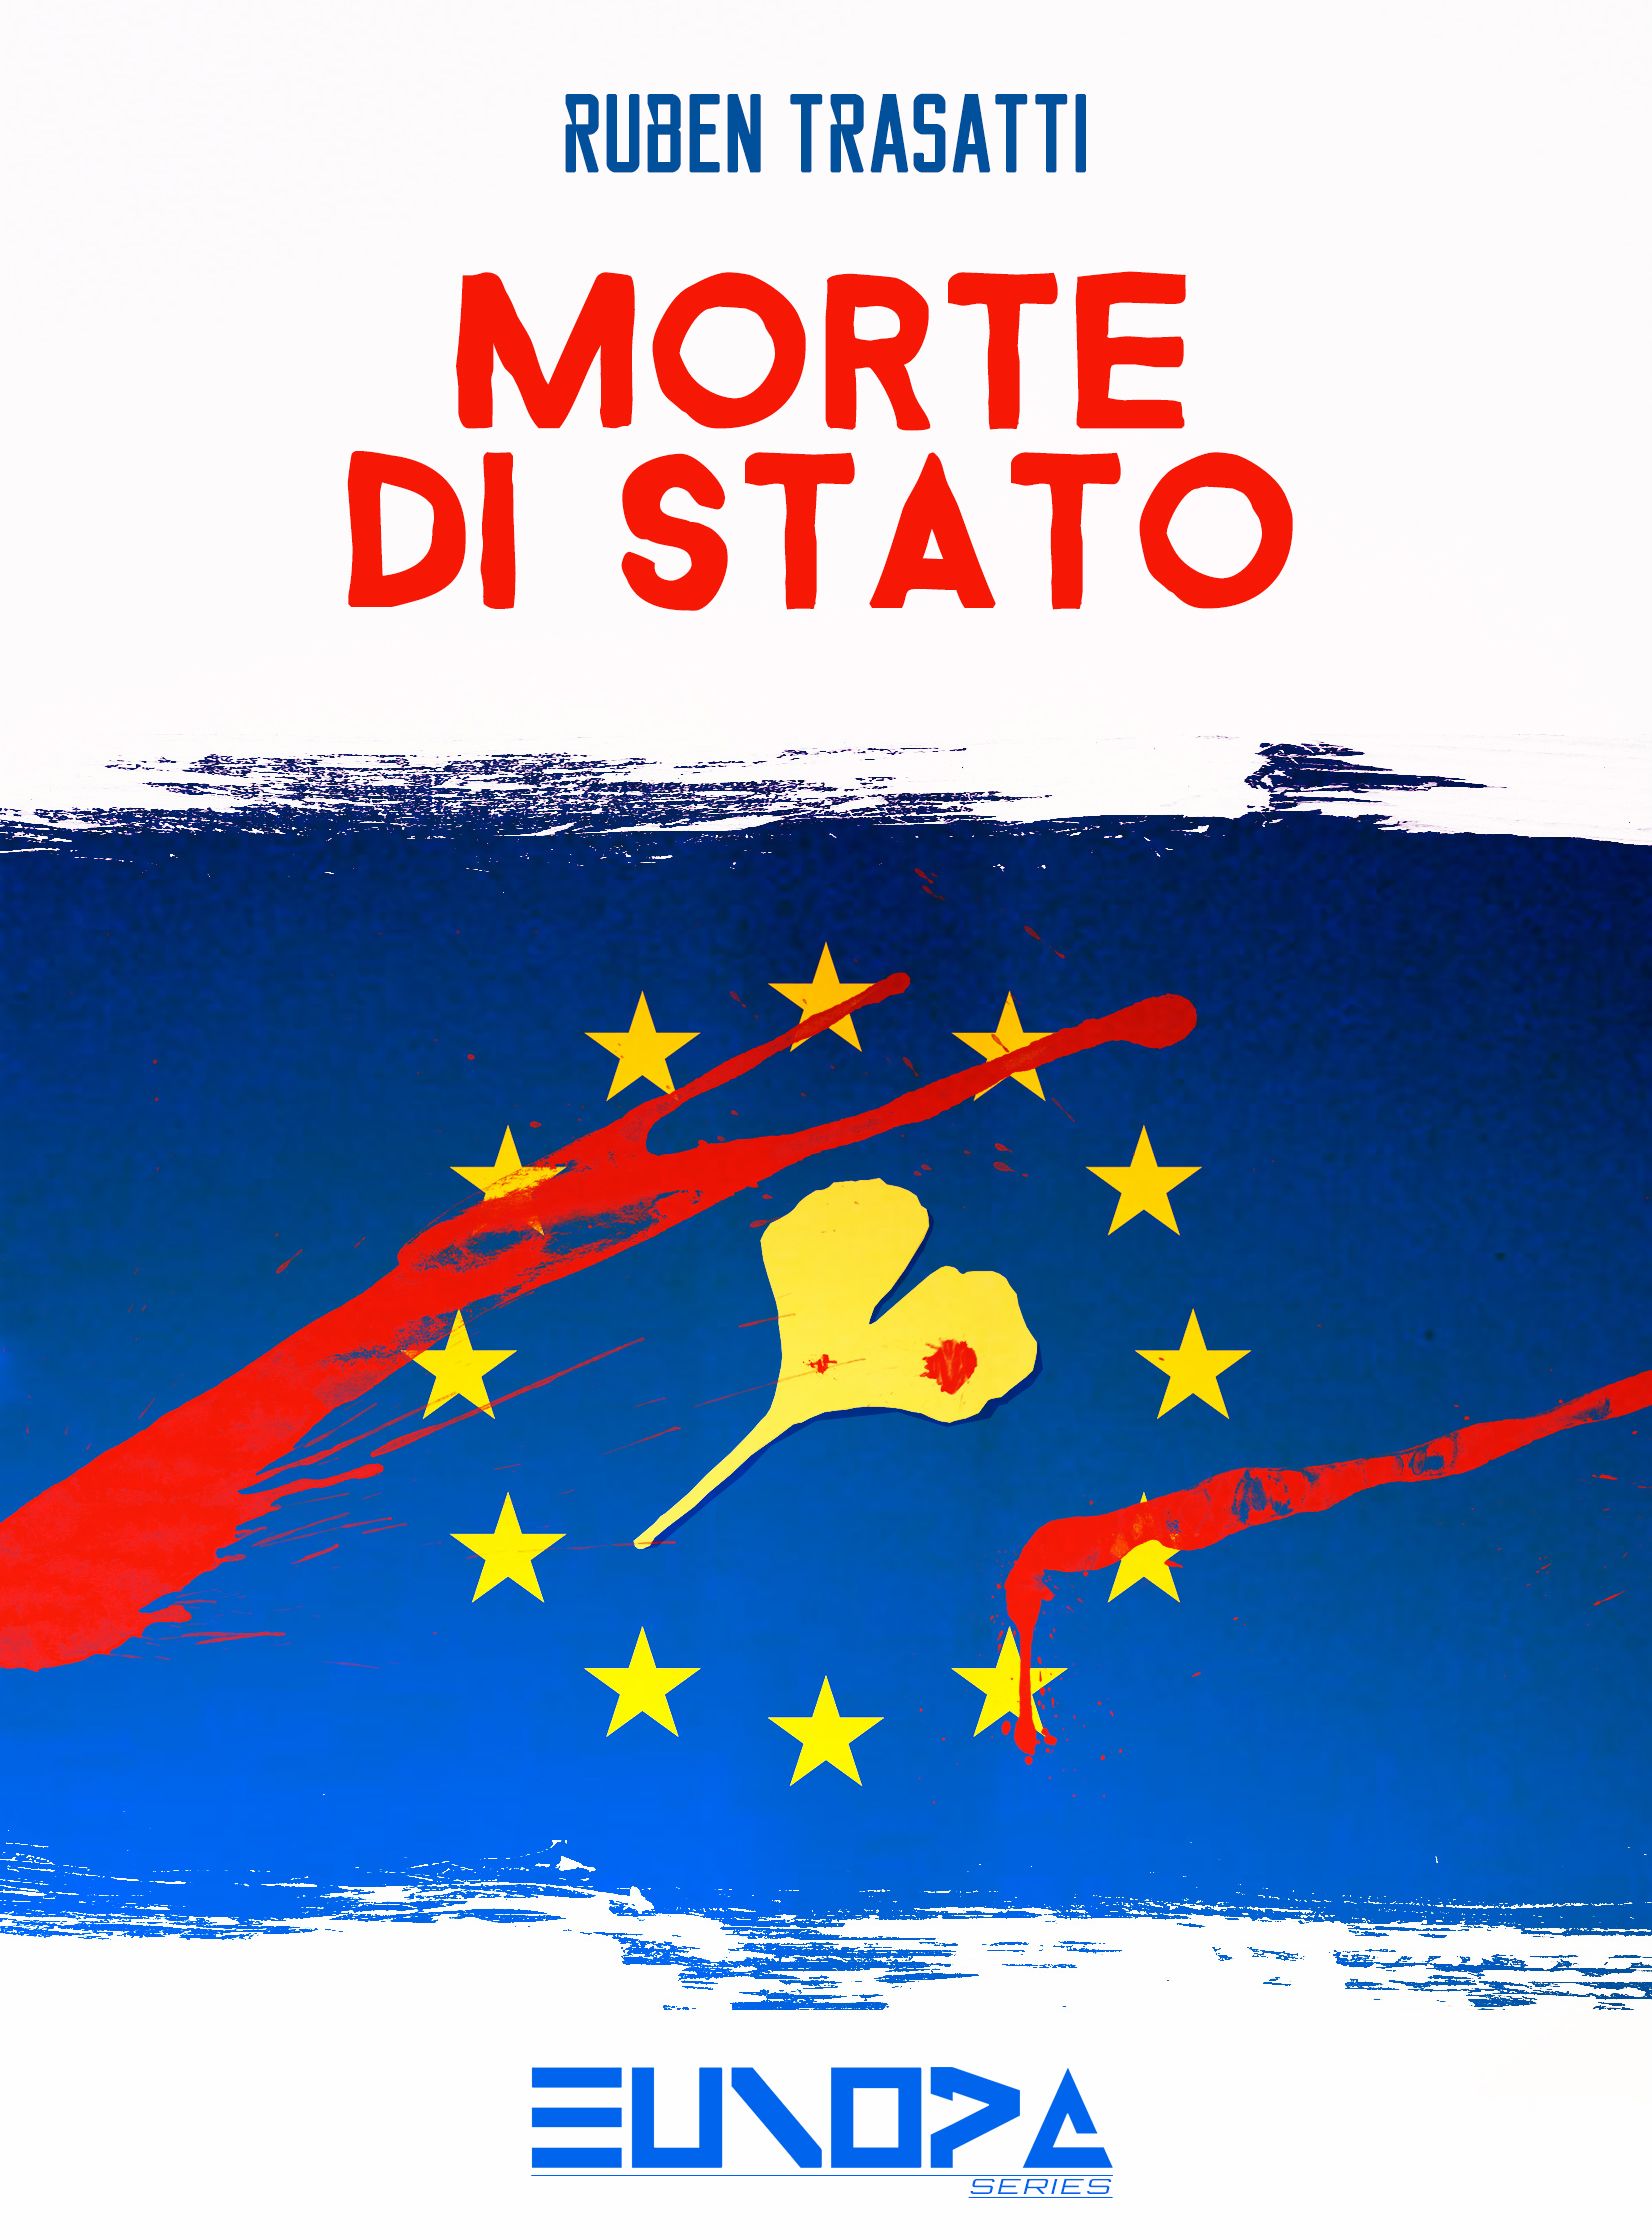 RECENSIONE: "MORTE DI STATO" di Ruben Trasatti